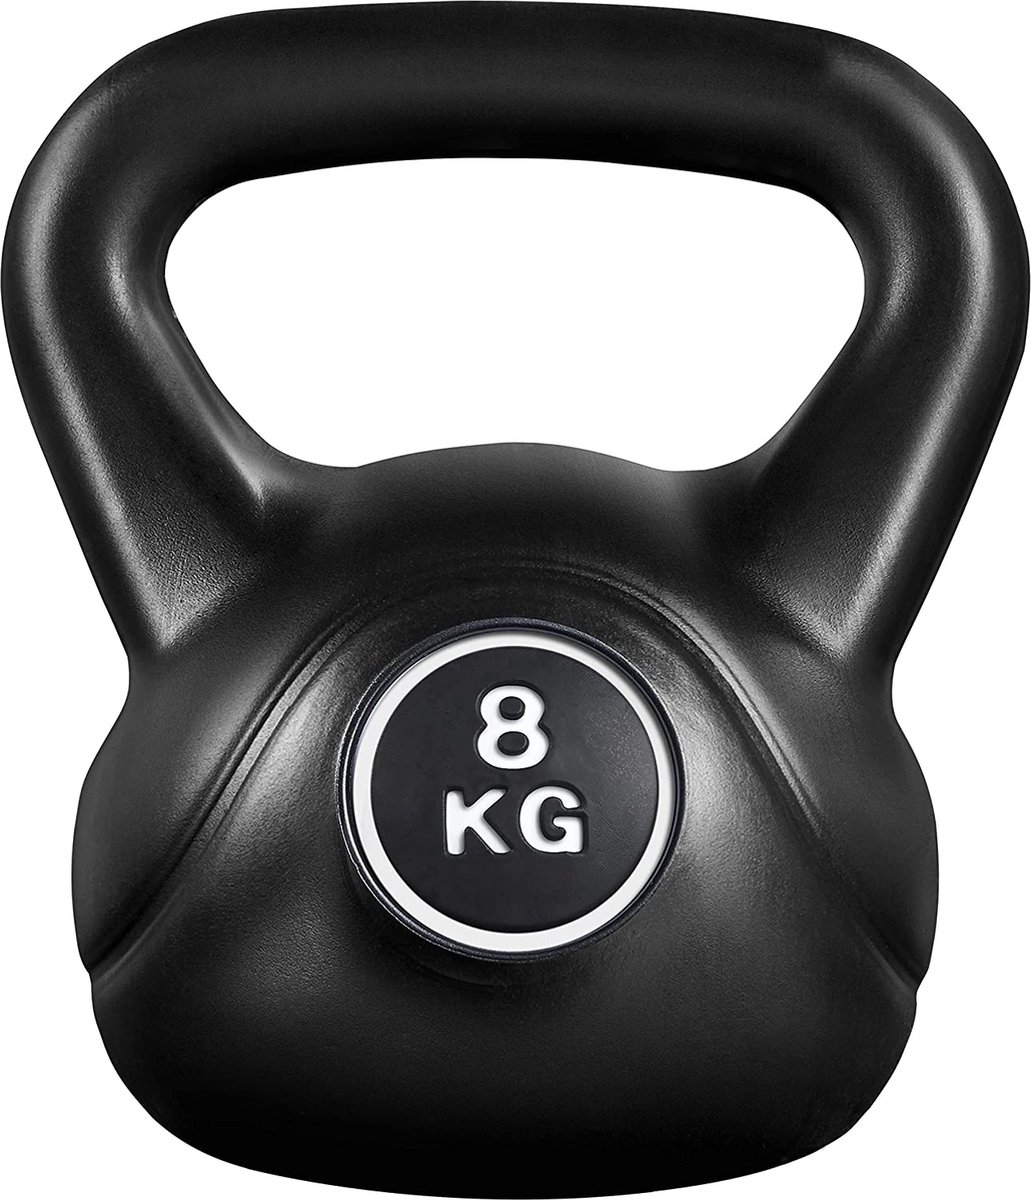 Kettlebell, 8 kg, gewichten, voor krachttraining, fitness, gymnastiek, kogelgewicht, gewicht HM-YAHEE-592047